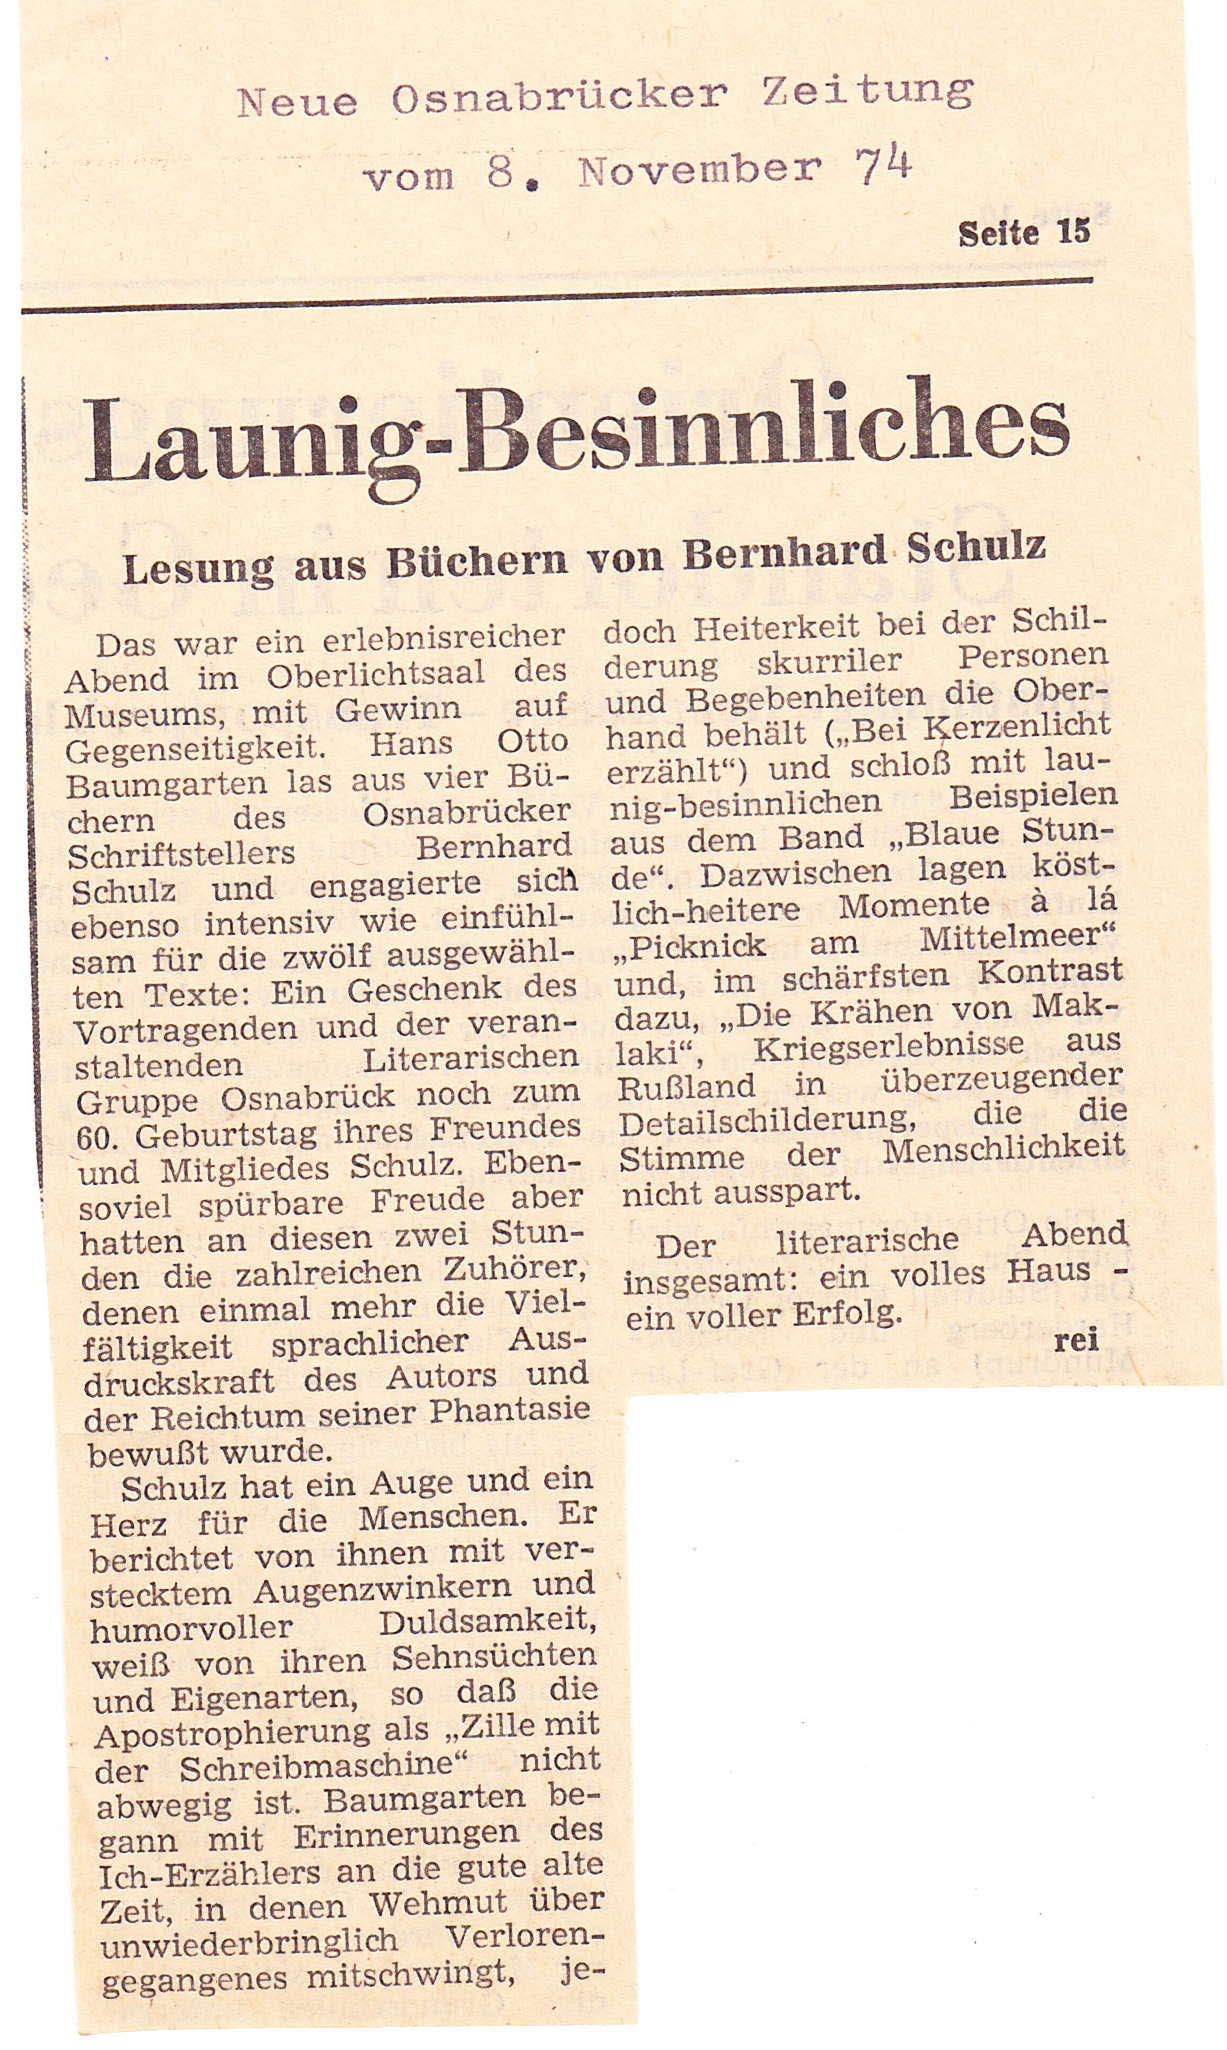 NOZ-08-11-1974-Lesung-von-Bernhard-Schulz